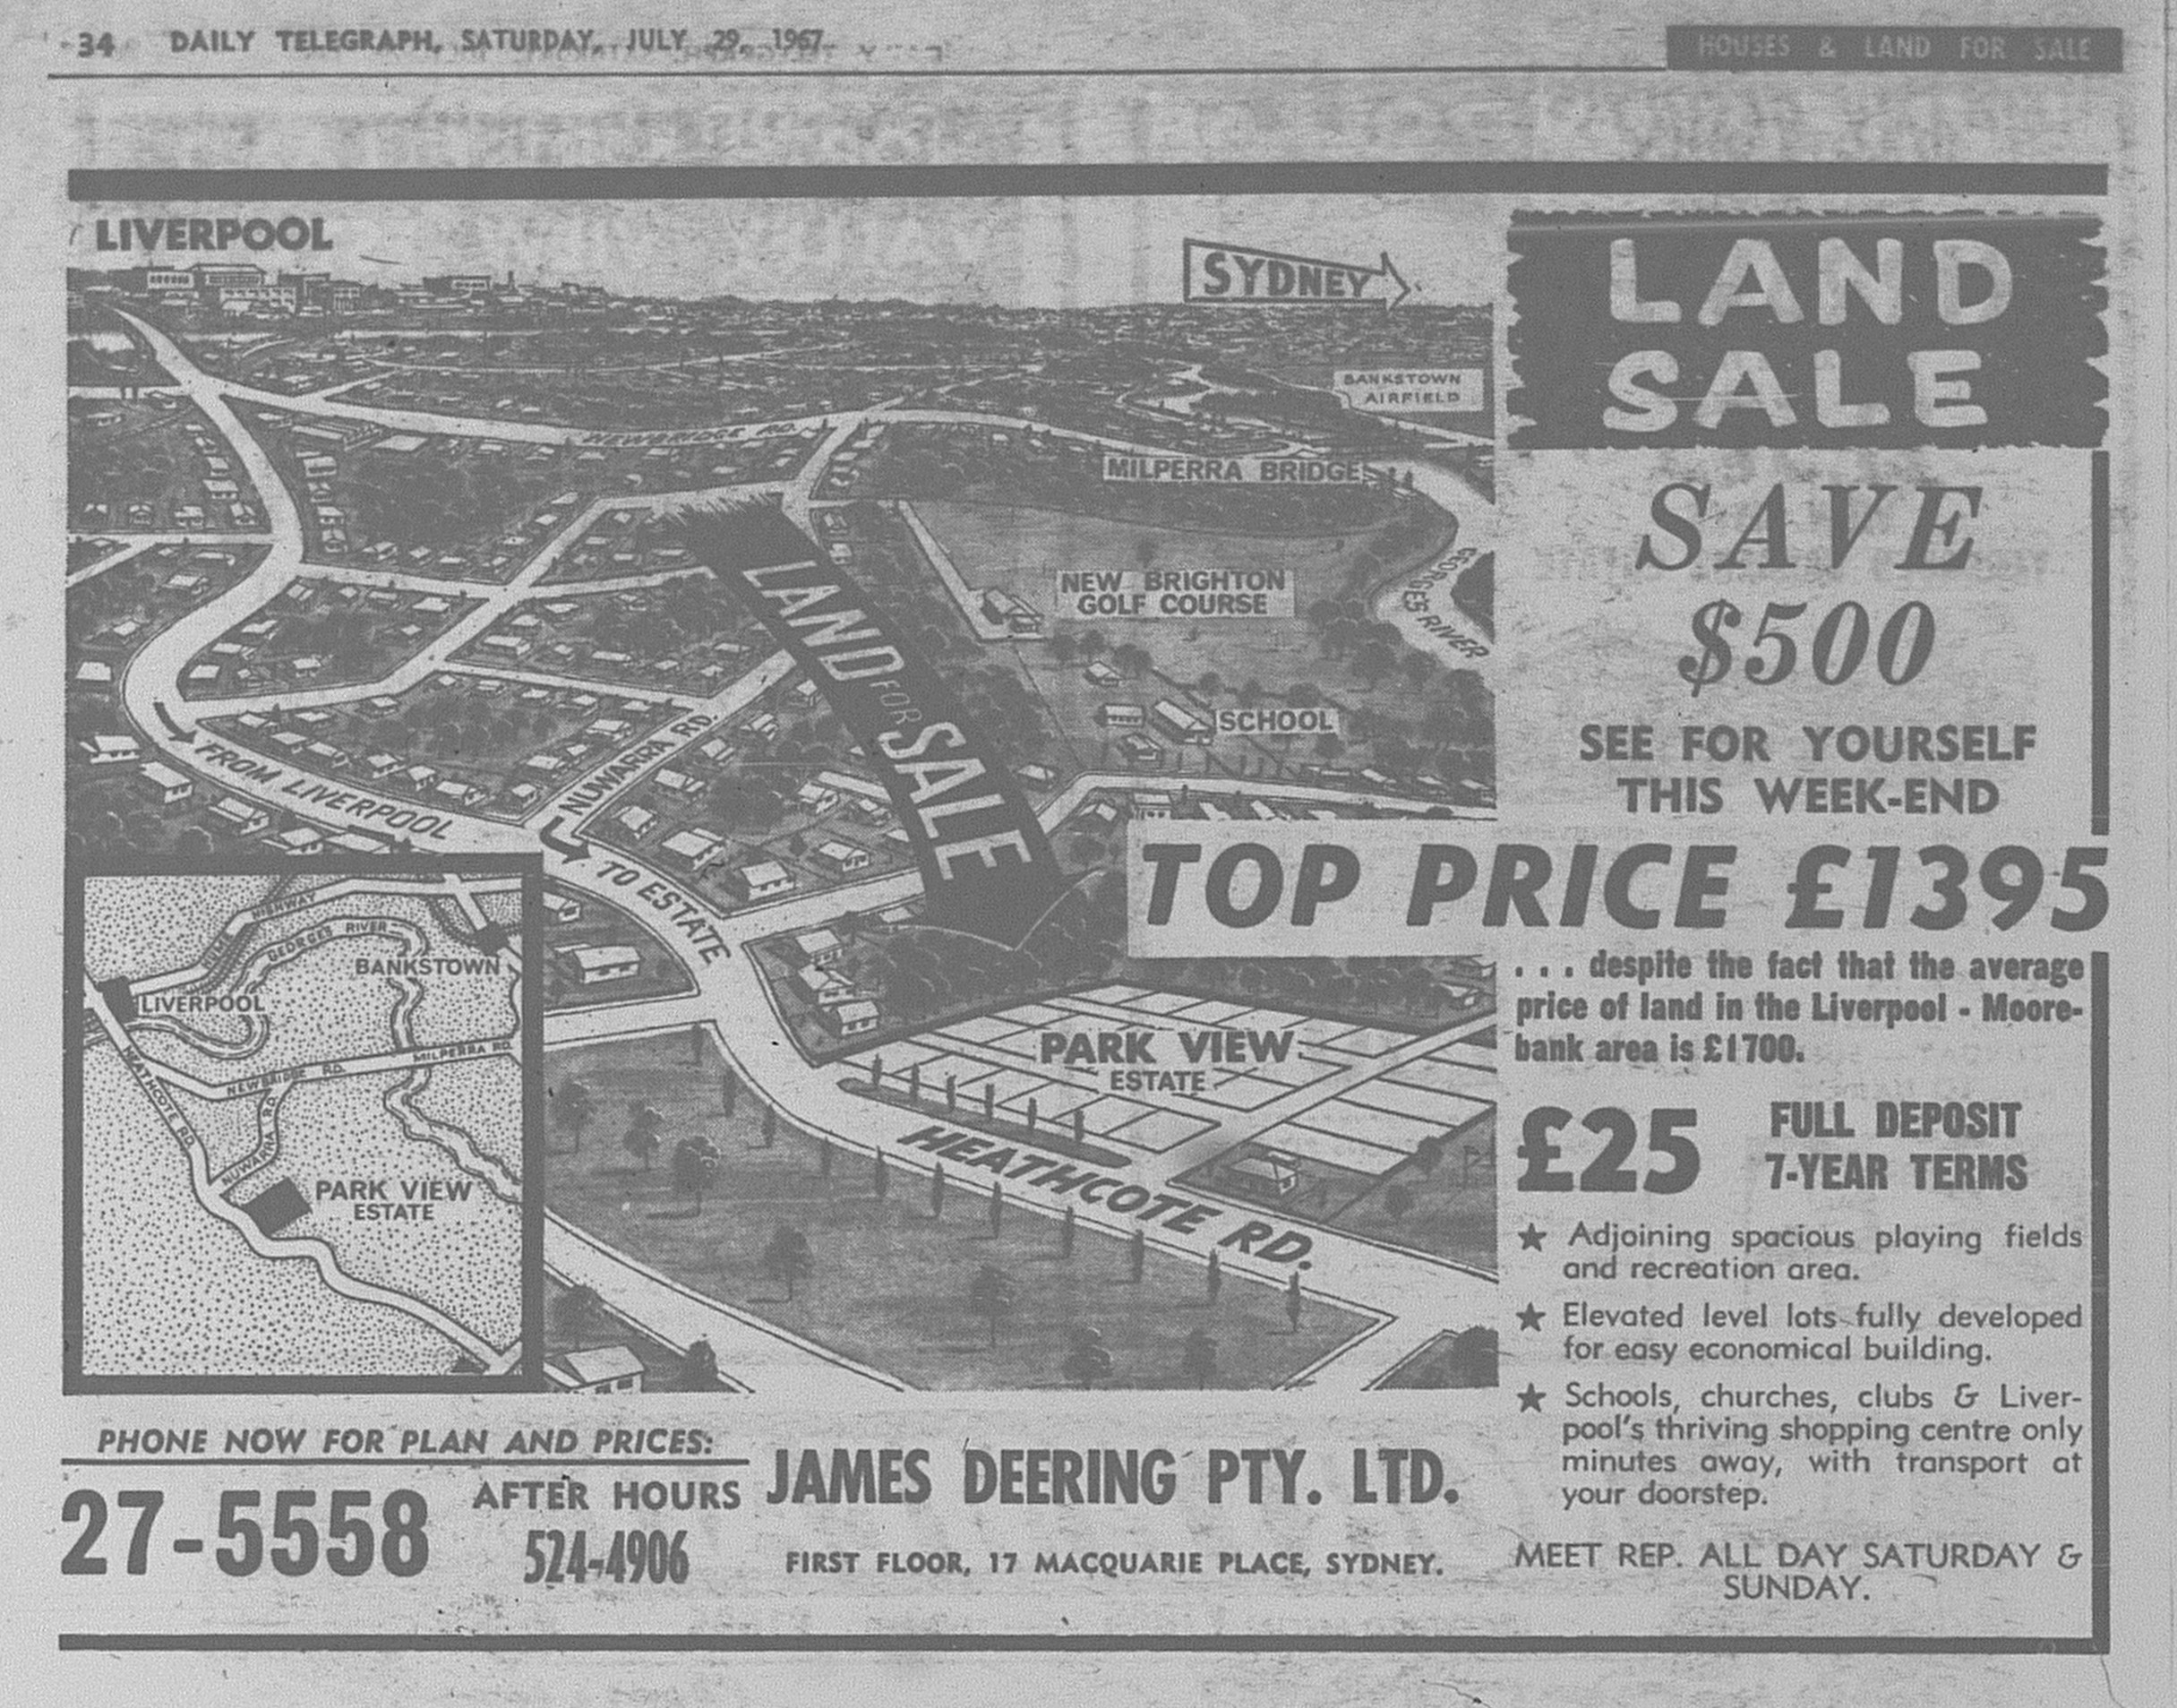 Moorebank Ad July 29 1967 daily telegraph 34